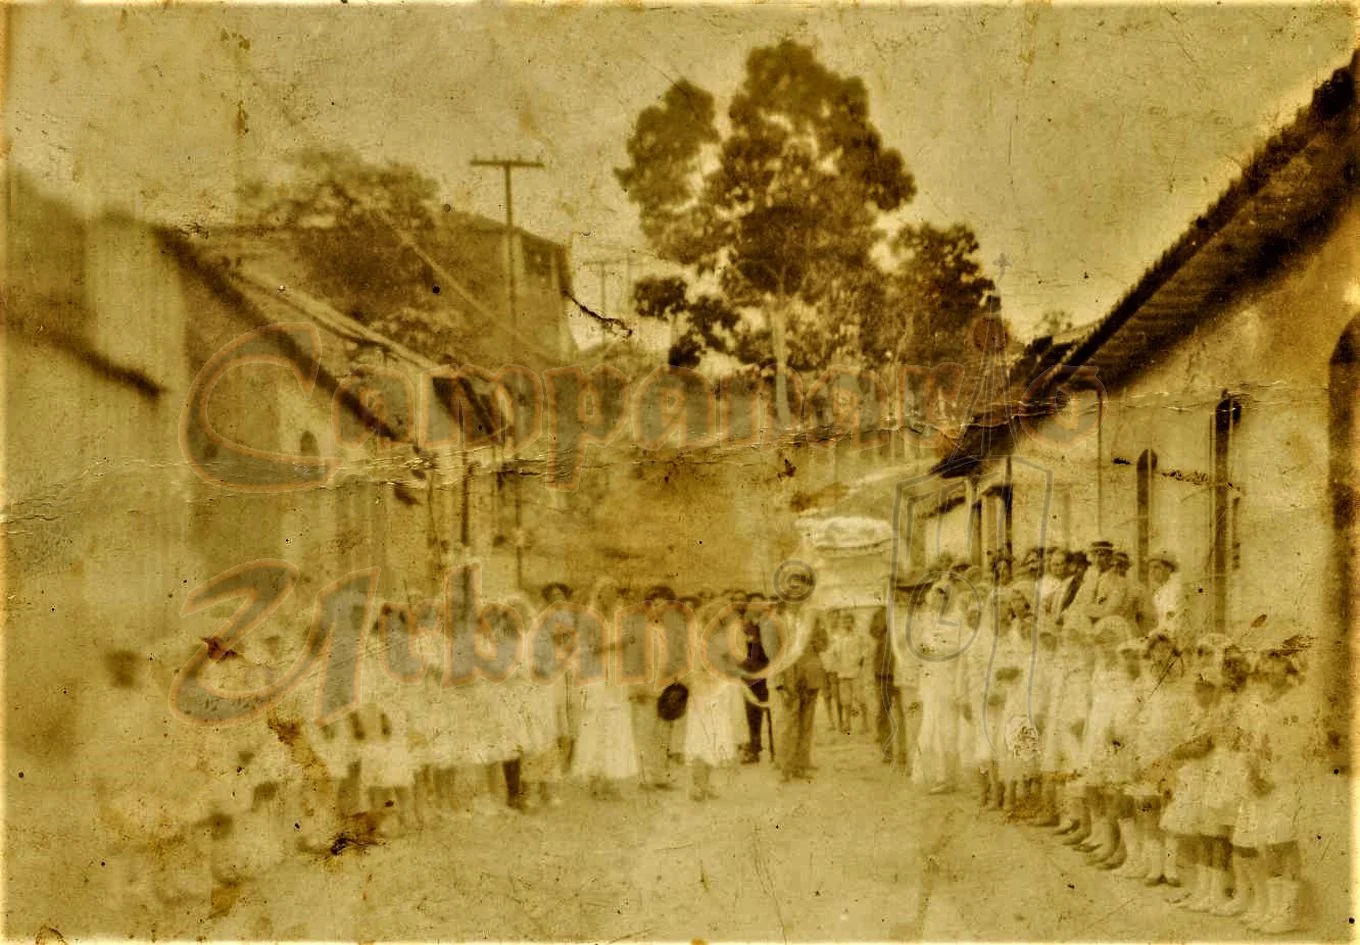 Funeral año 1920 en la calle Comercio de Guarenas. Al fondo, la Bajada de Los Almendrones